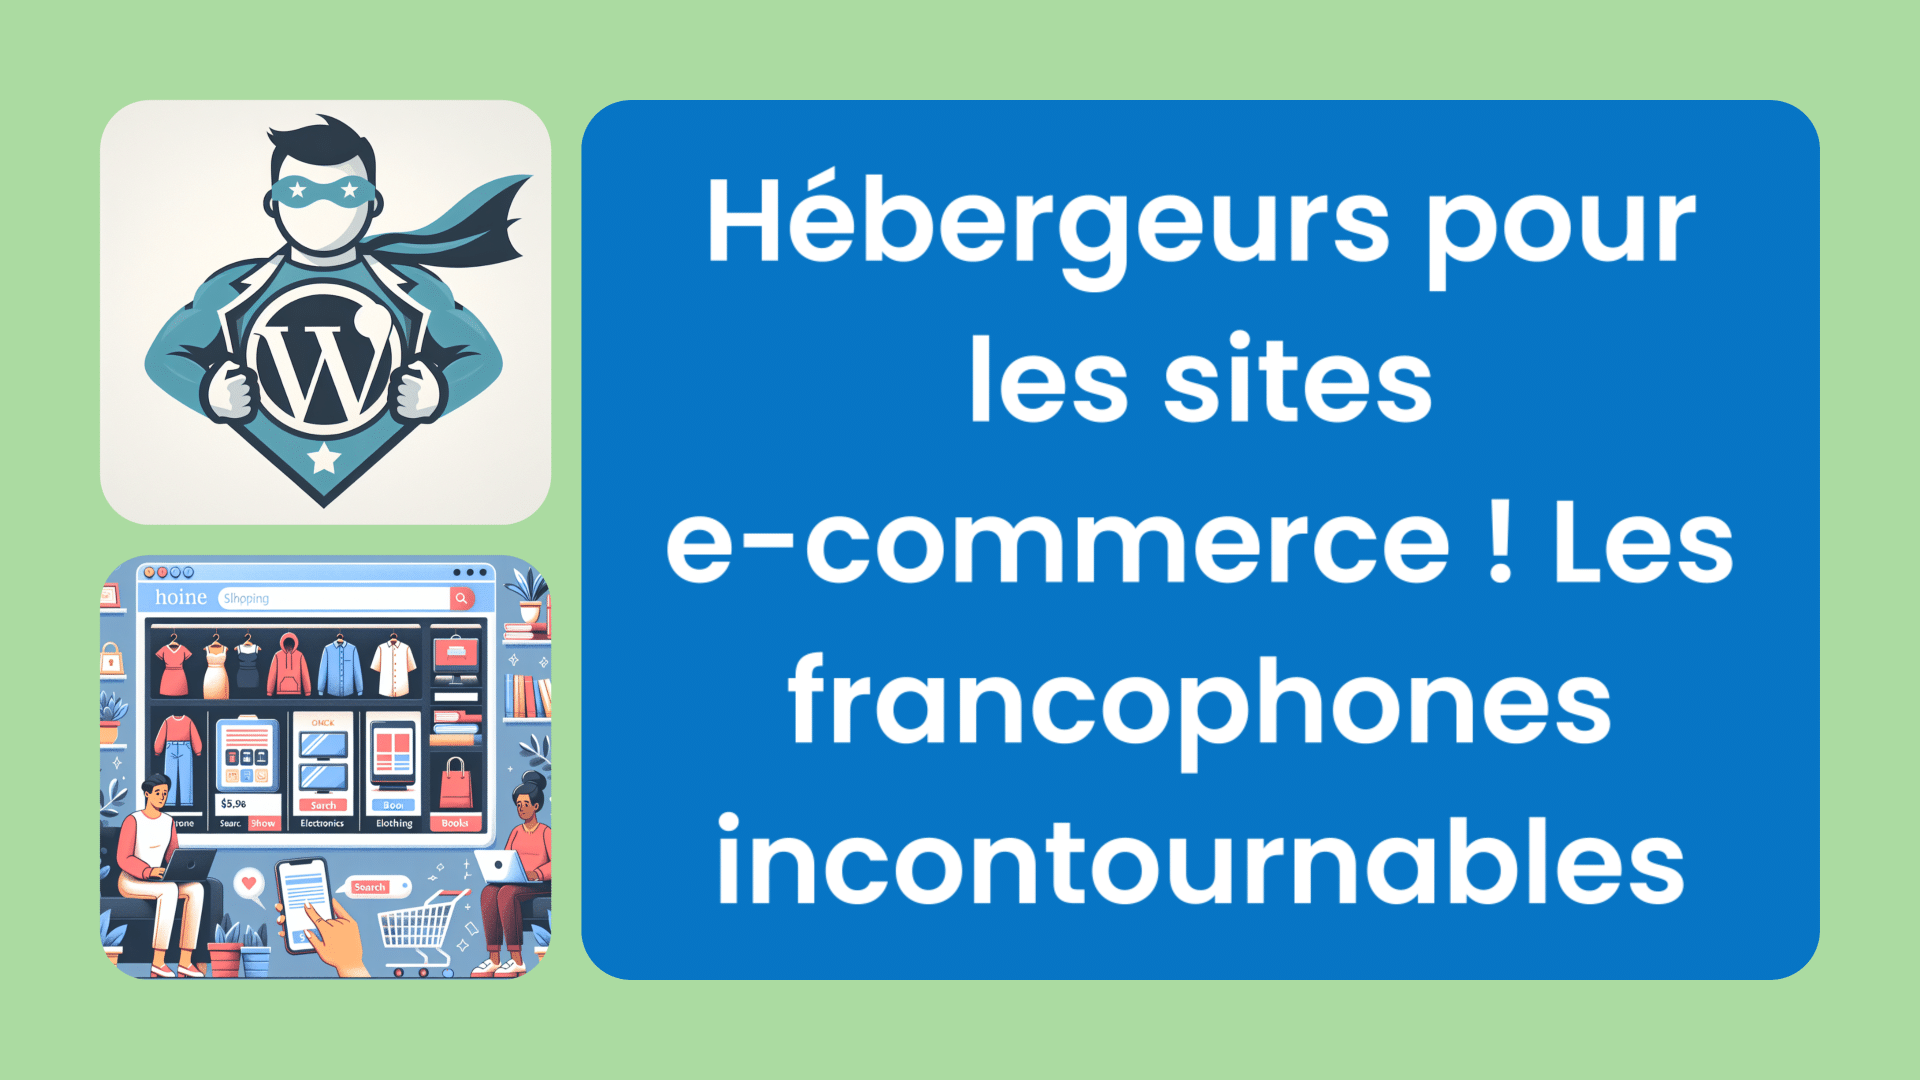 Hébergeurs pour les sites e-commerce ! Les francophones incontournables